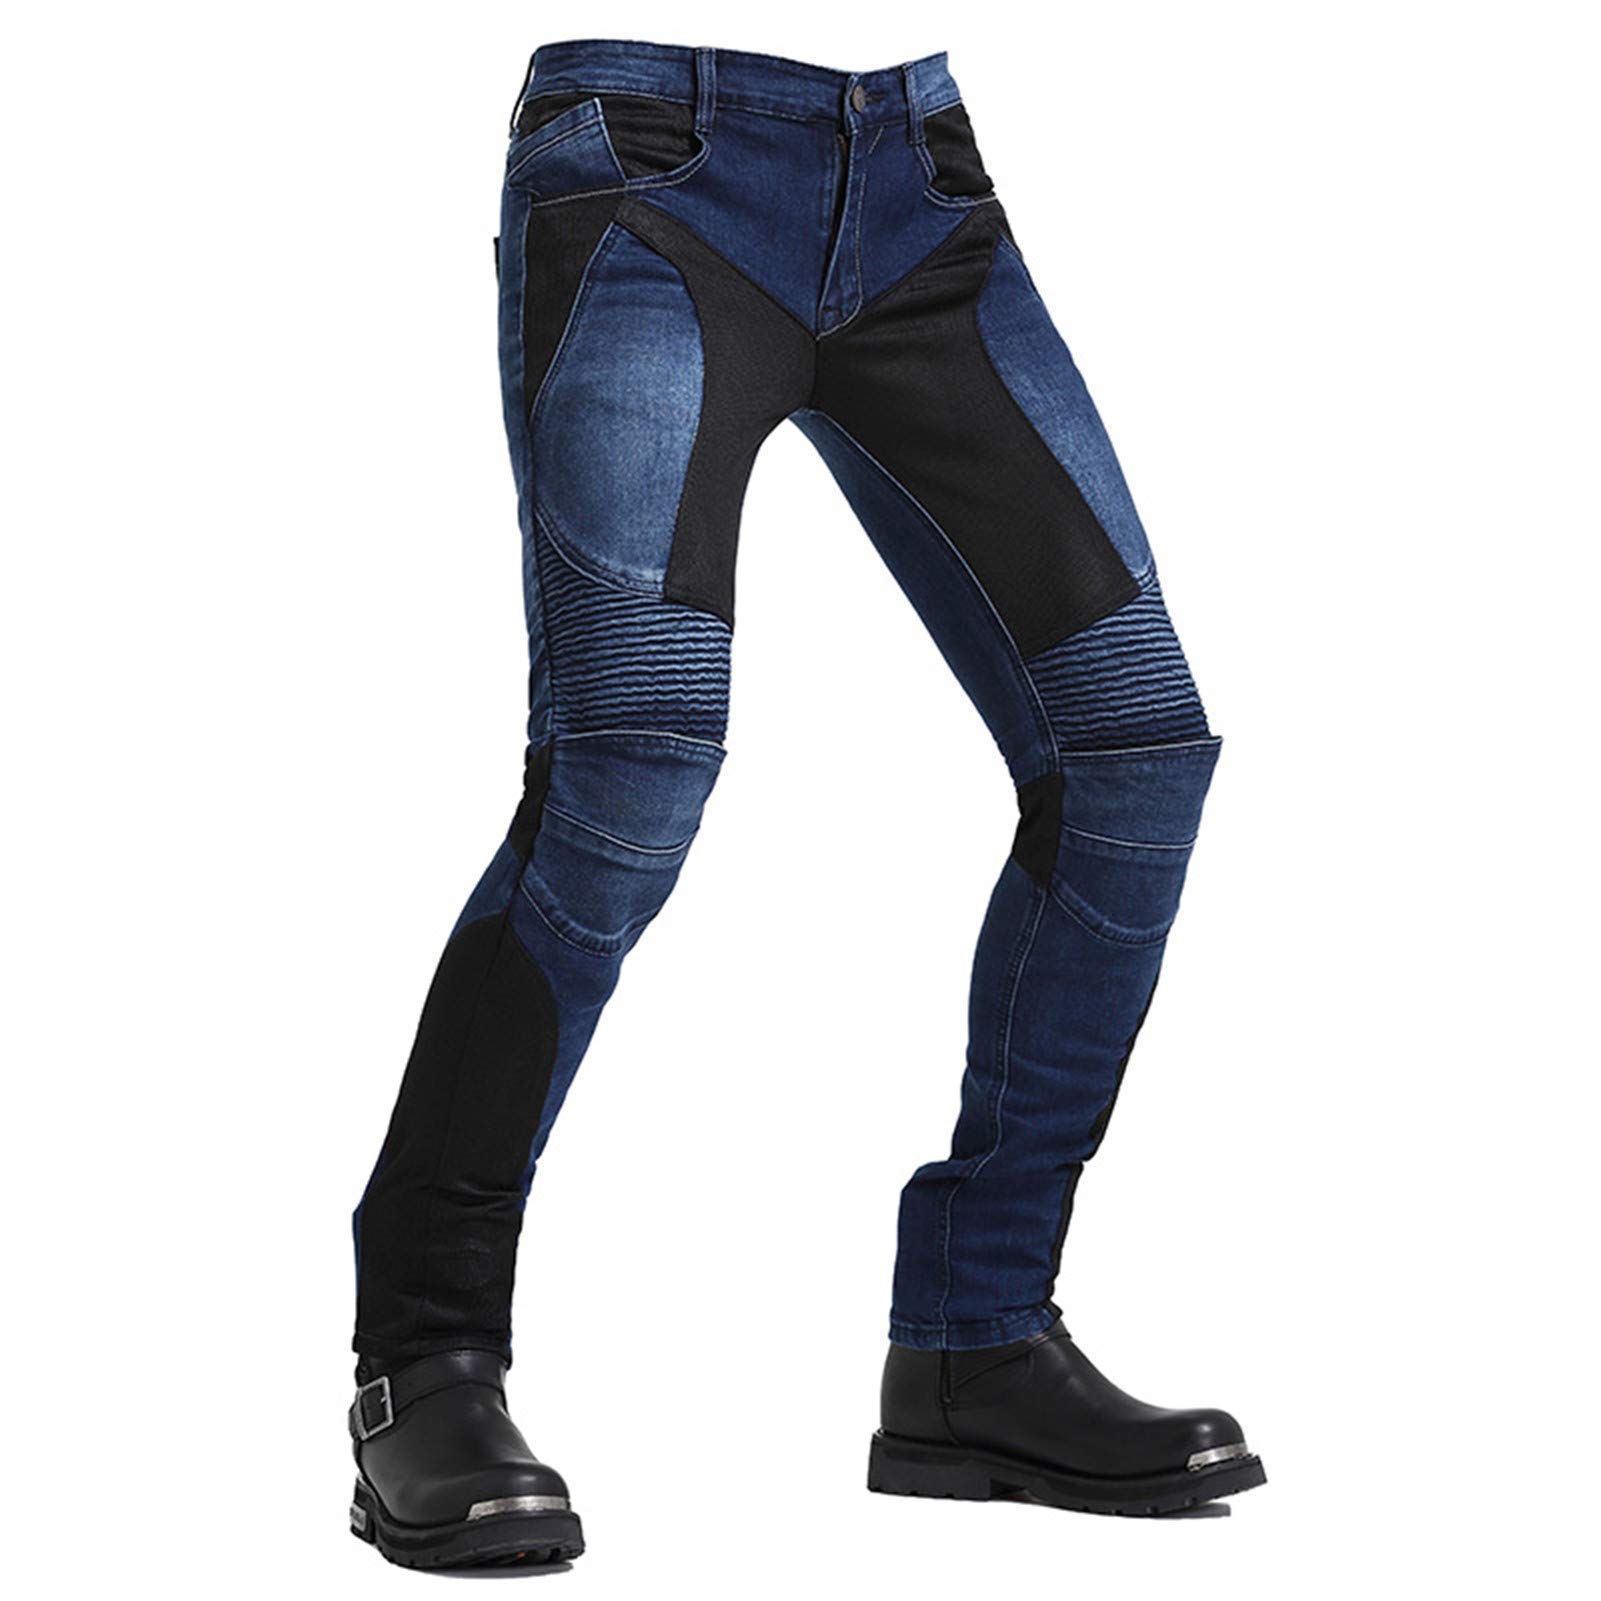 BEDSETS Herren Motorradhose Denim Jeans Hose Motocross Hose Jeans mit 2 Paar Schutzpolster mit Schutzfutter (Blau,4XL) von BEDSETS